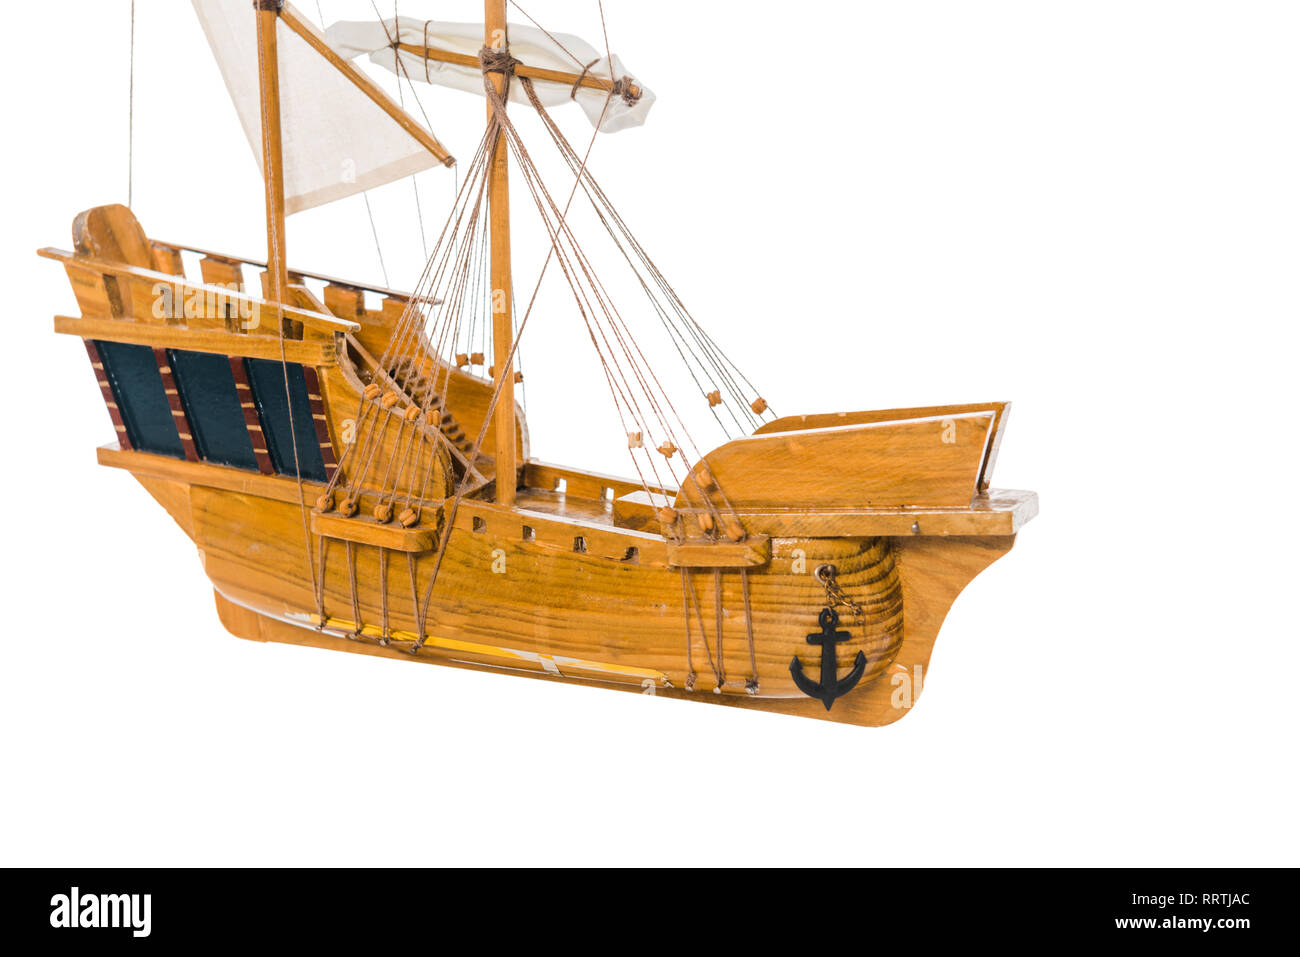 Modèle de navire en bois vintage dans l'air flottant isolated on white with copy space Banque D'Images